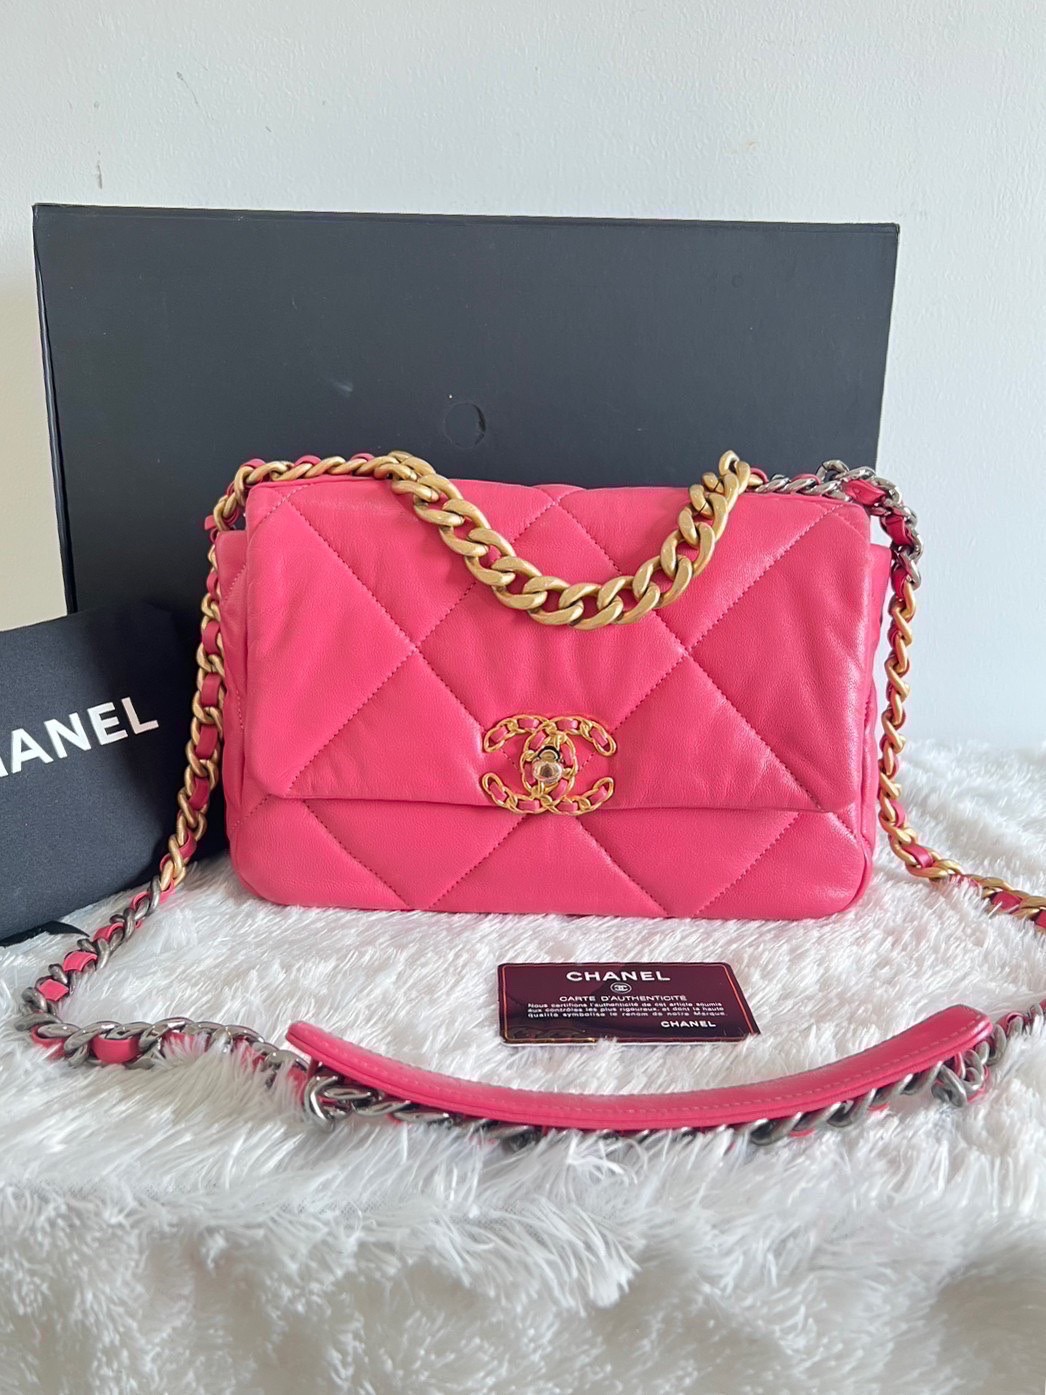 Chanel19 size26 pink lambskin GHW holo29